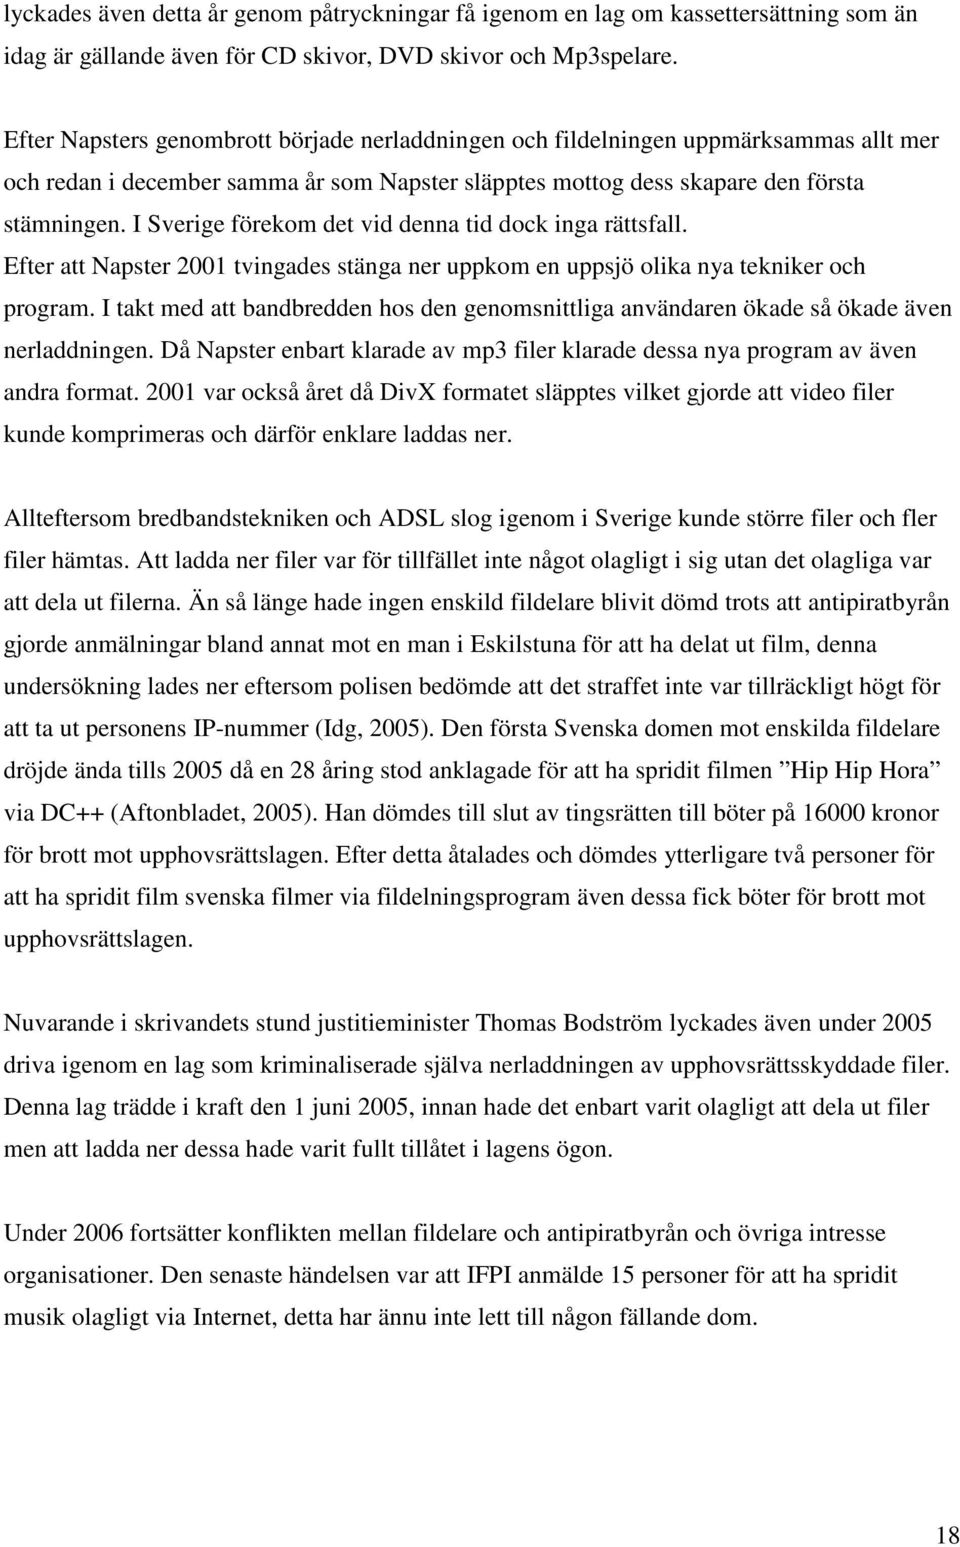 I Sverige förekom det vid denna tid dock inga rättsfall. Efter att Napster 2001 tvingades stänga ner uppkom en uppsjö olika nya tekniker och program.